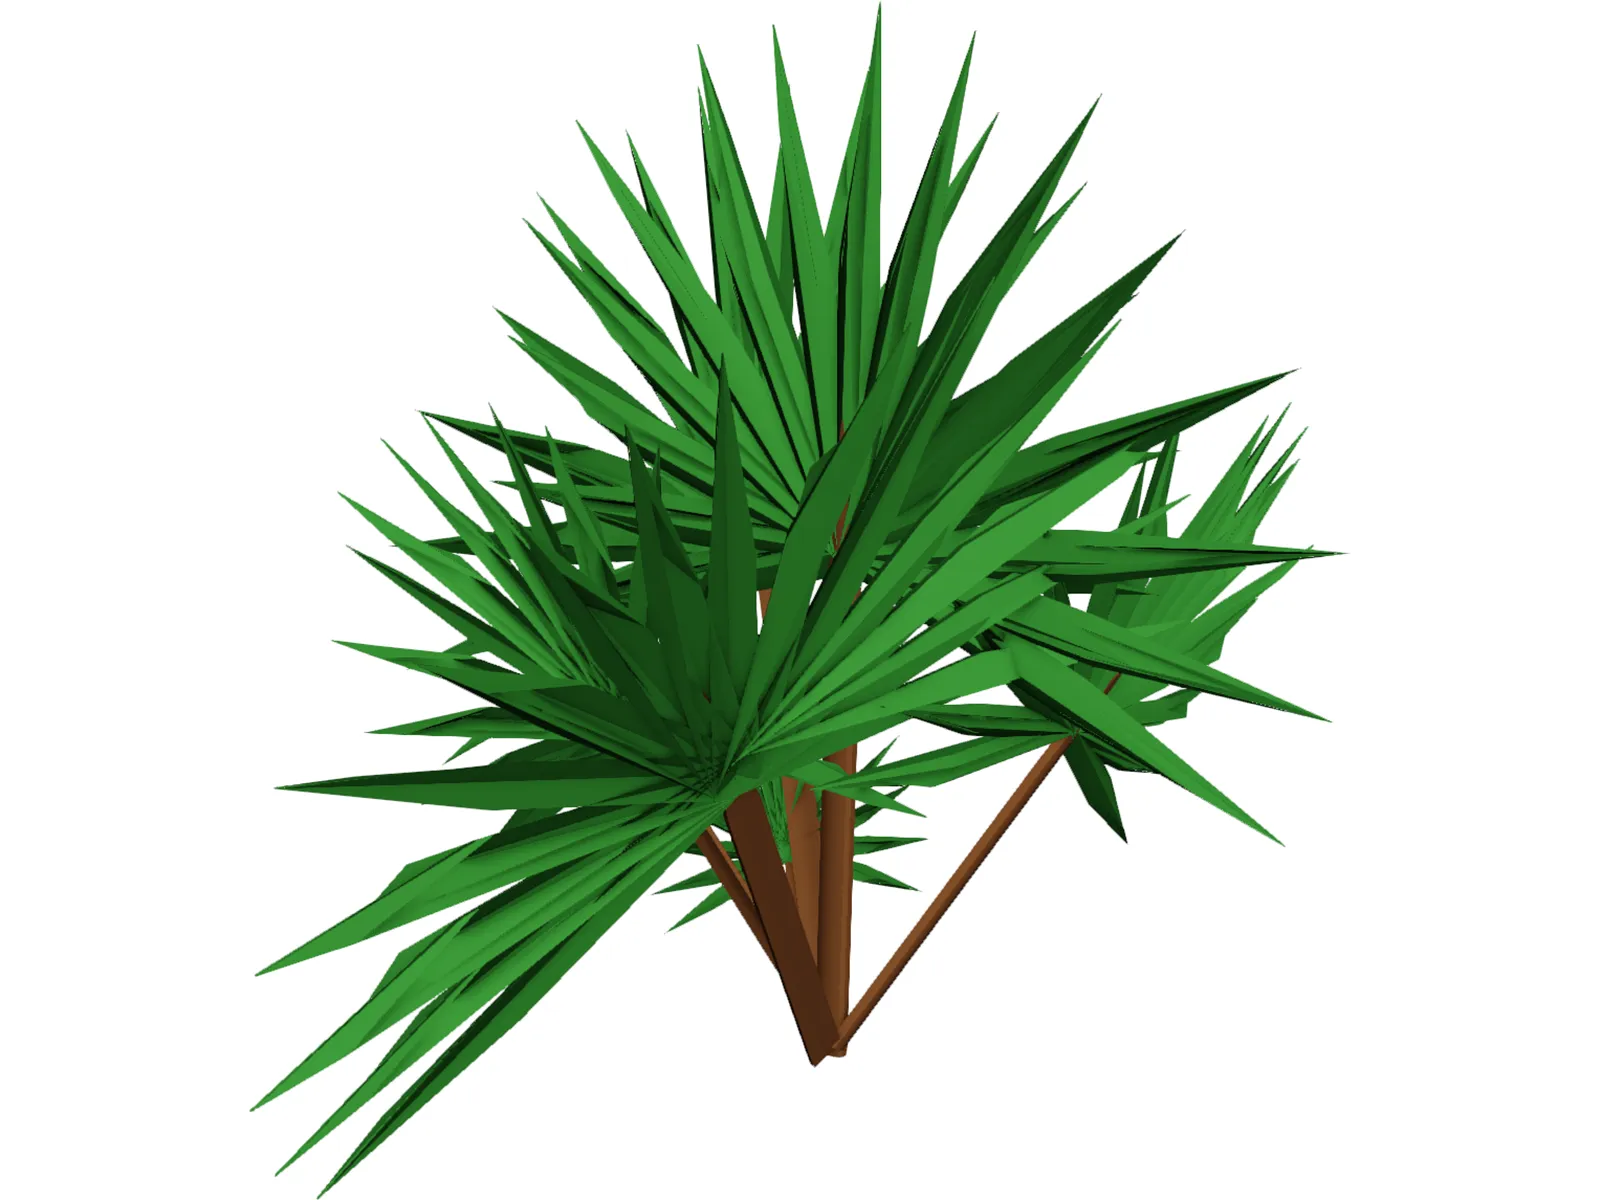 Palmetto Plant 3D Model